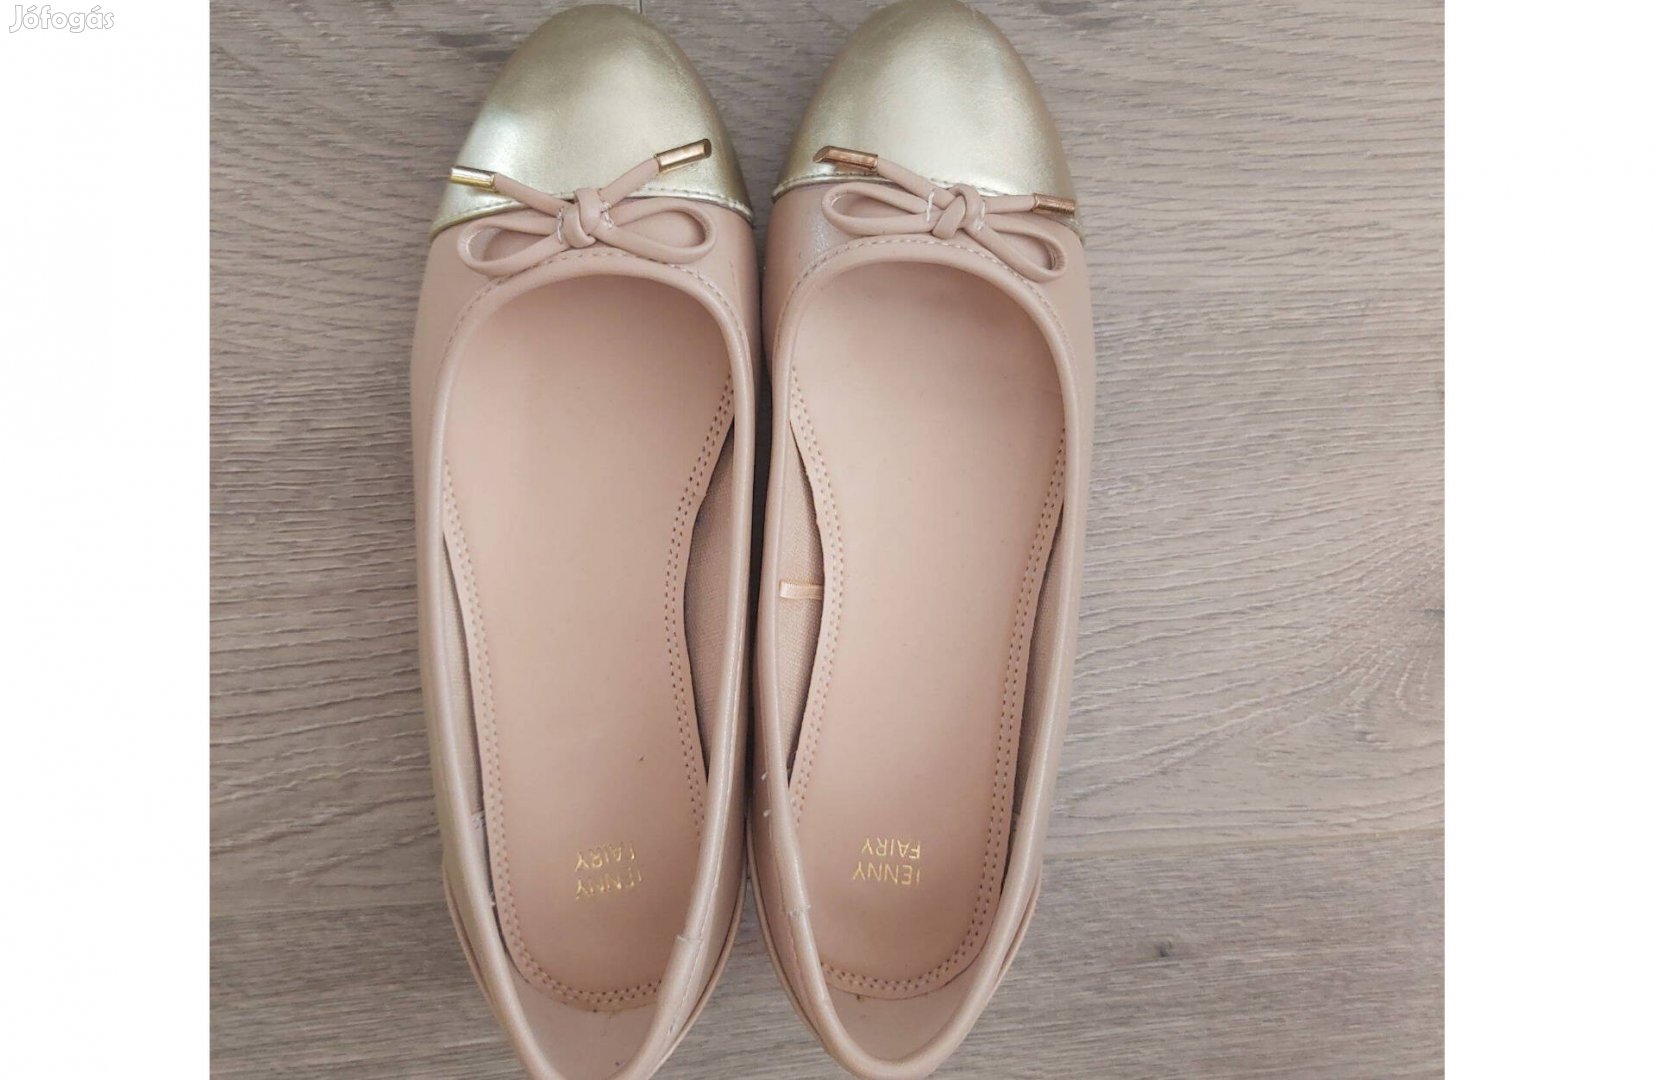 Lányka arany-púder rózsaszín CCC-s balerina cipő